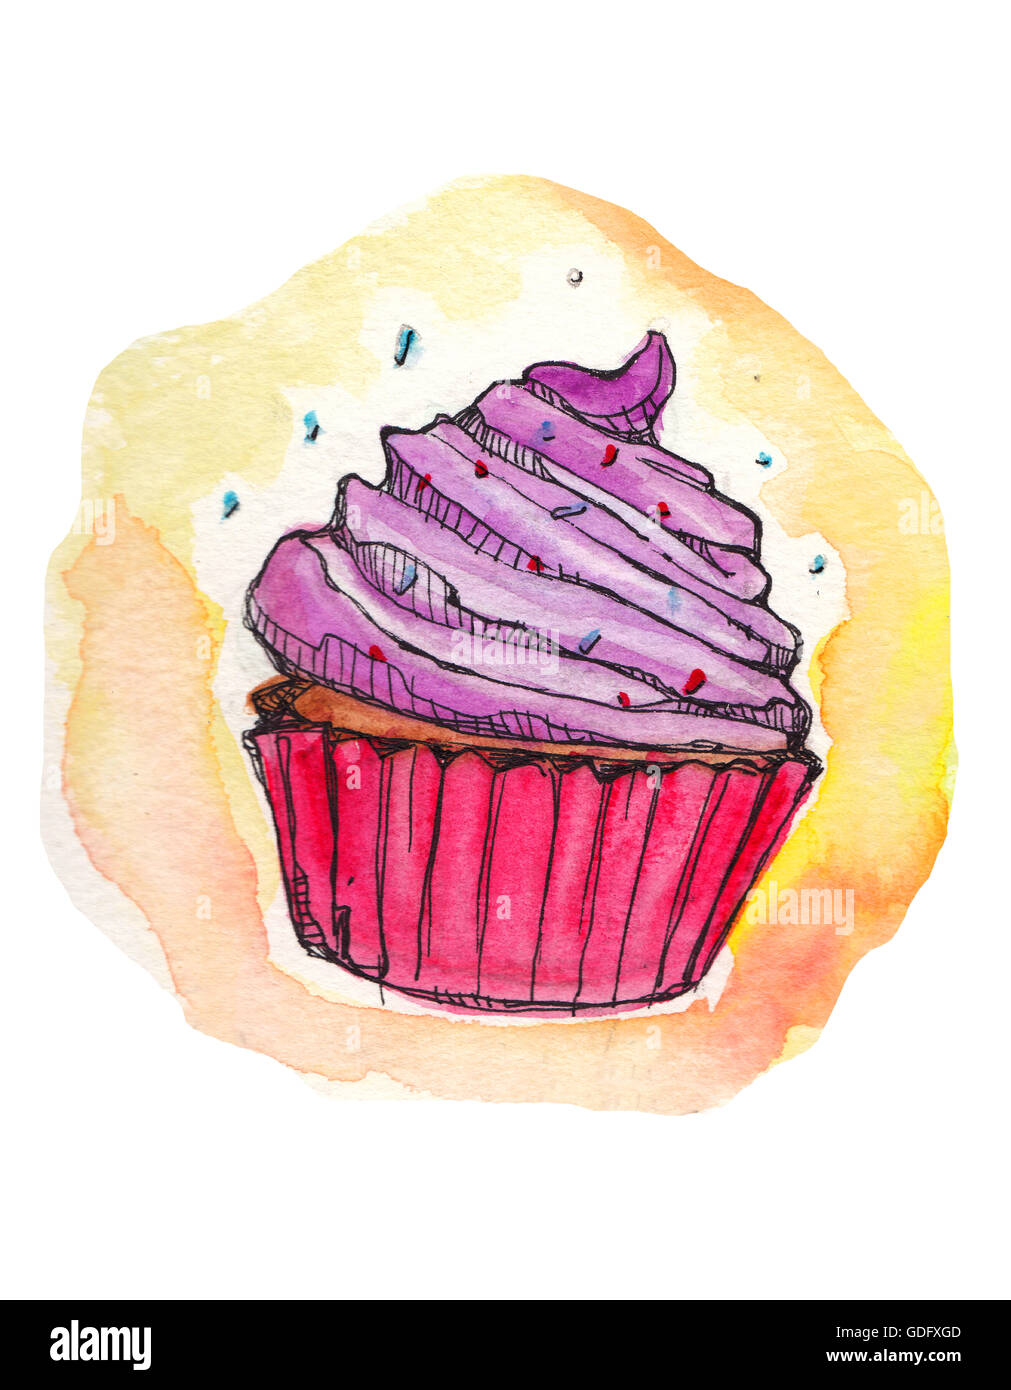 Handgezeichnete Illustrationen oder Zeichnung von einem cupcake Stockfoto